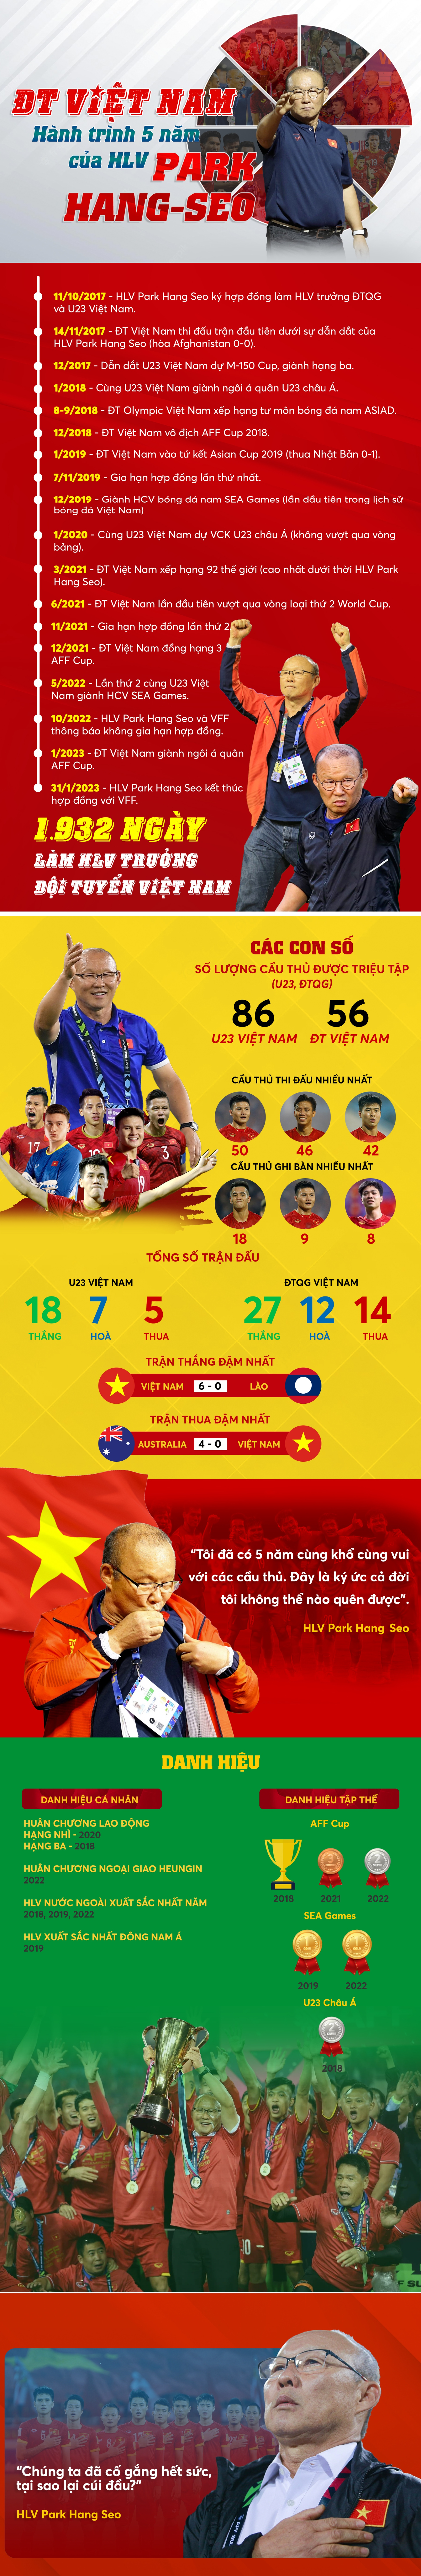 Infographic: Nhìn lại 5 năm khó quên của HLV Park Hang Seo cùng bóng đá Việt Nam - 1